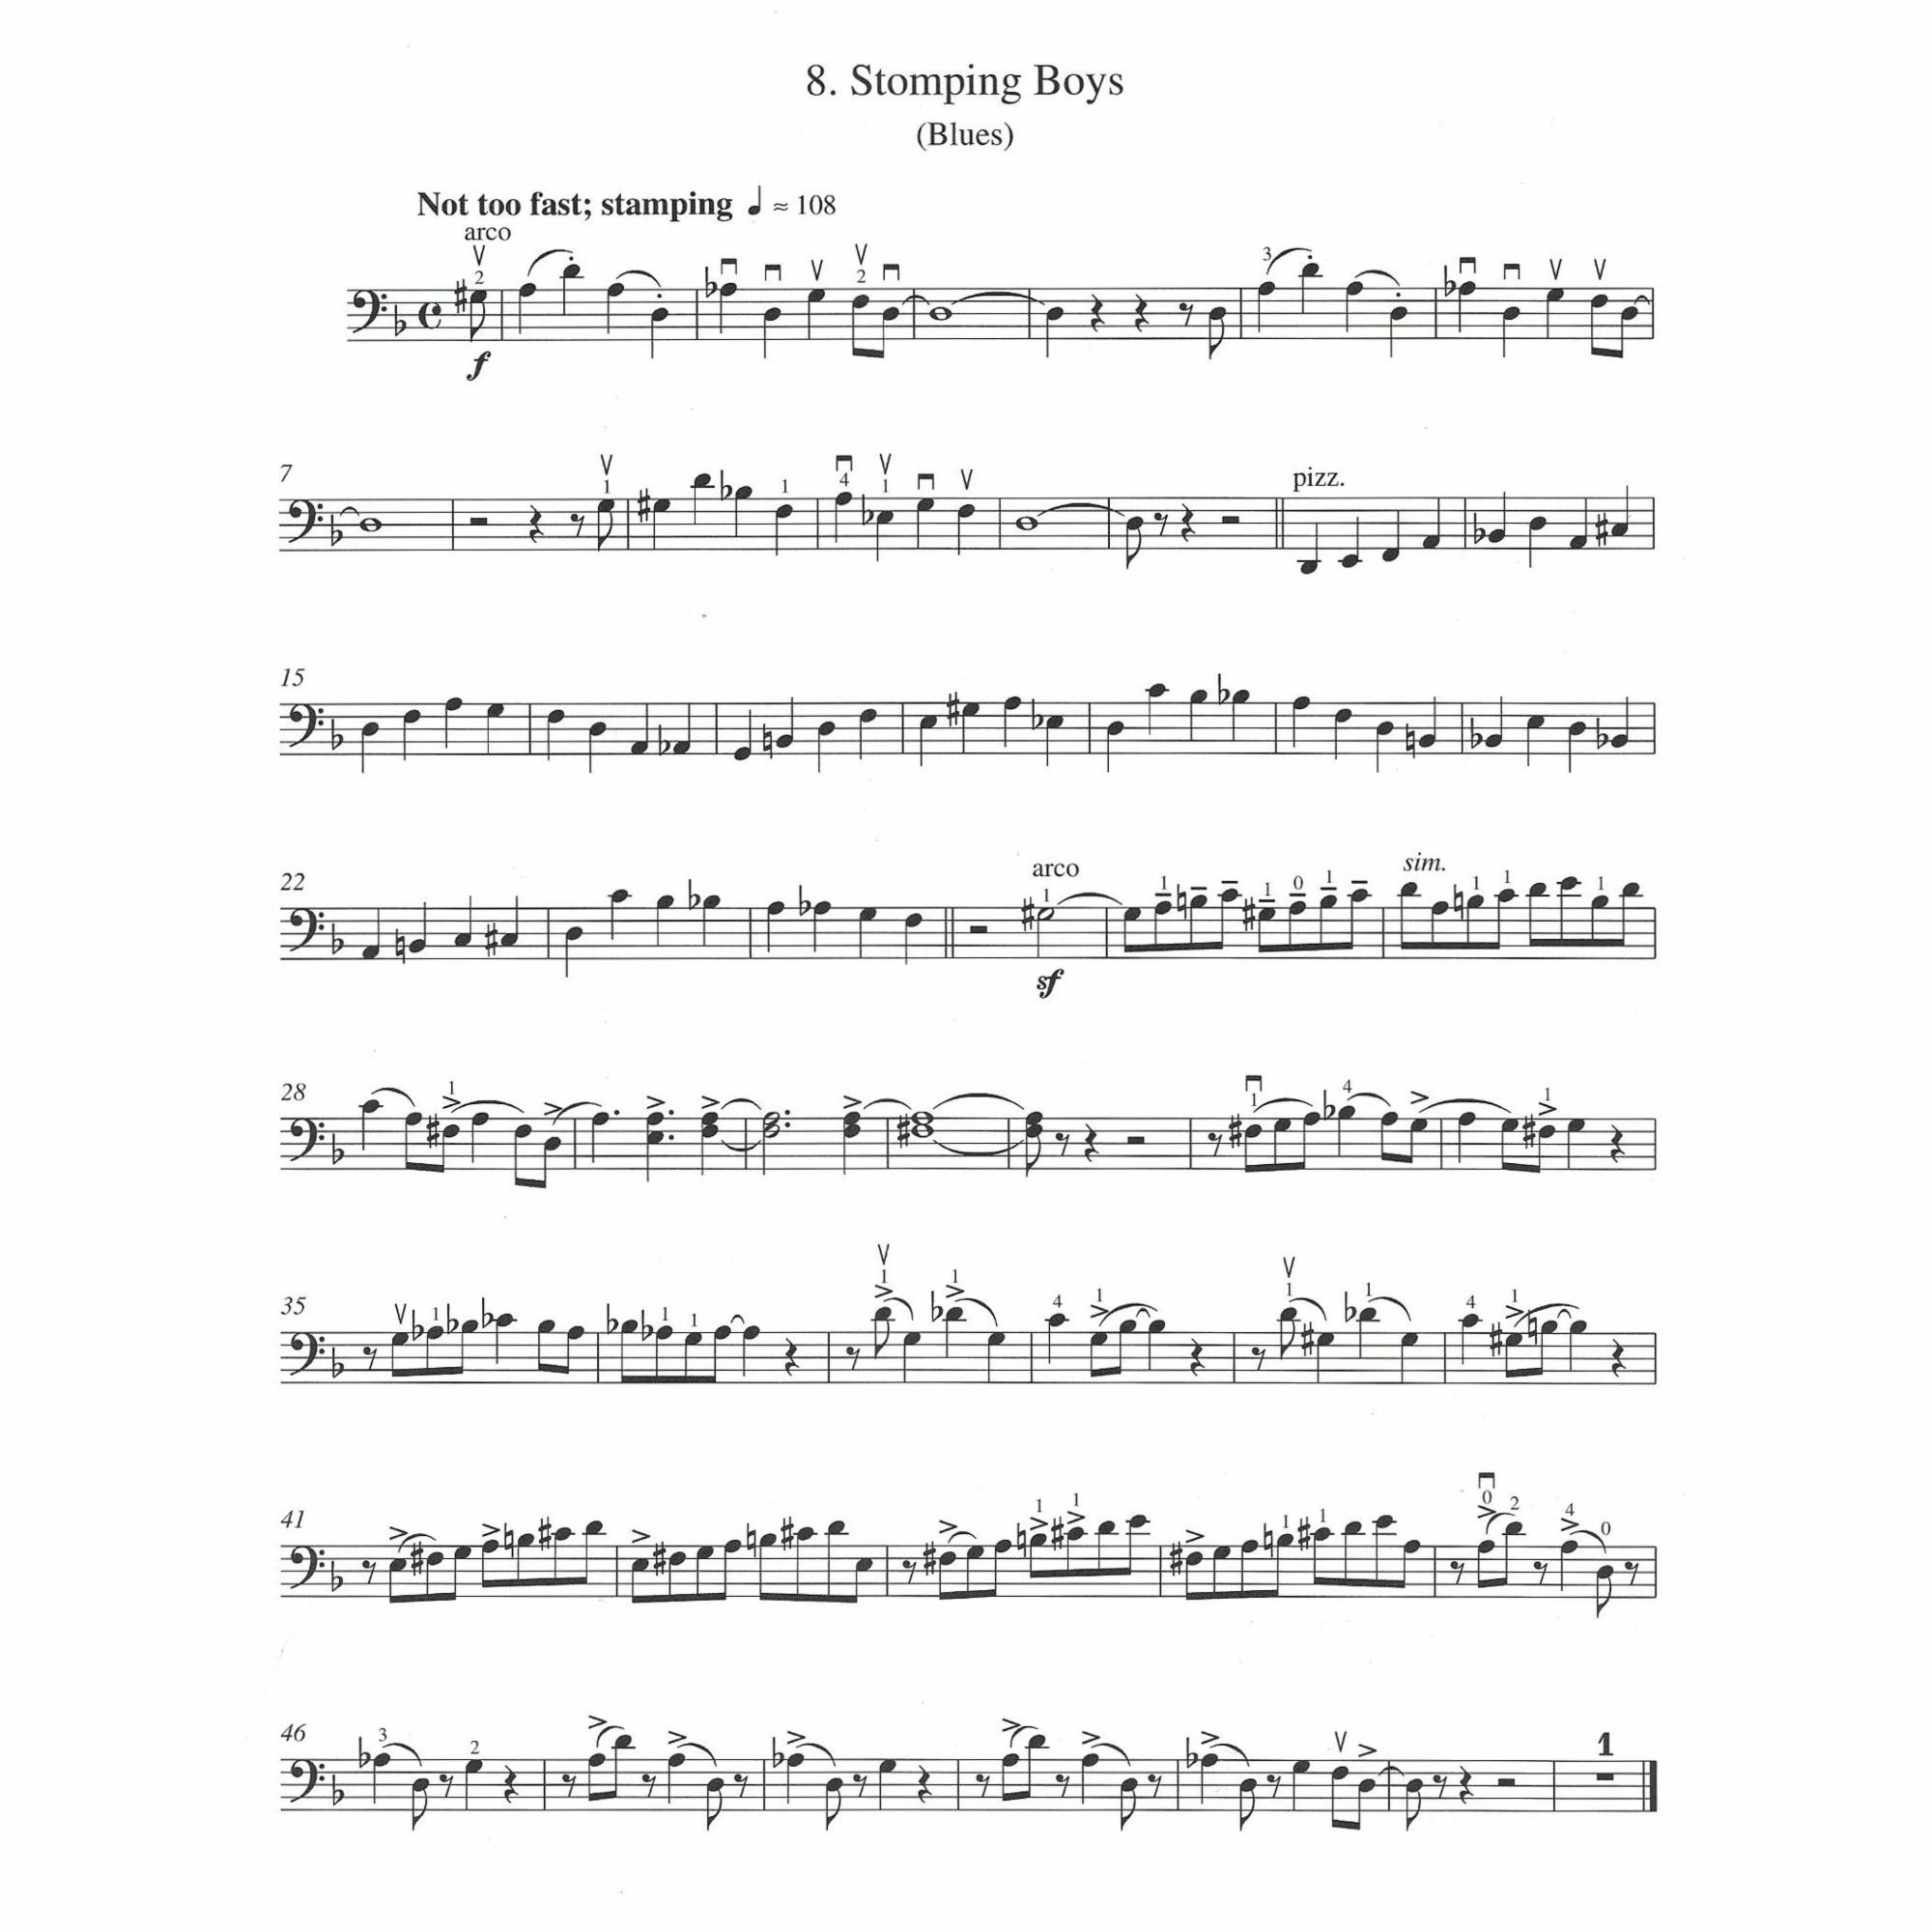 Sample: Cello (Pg. 11)